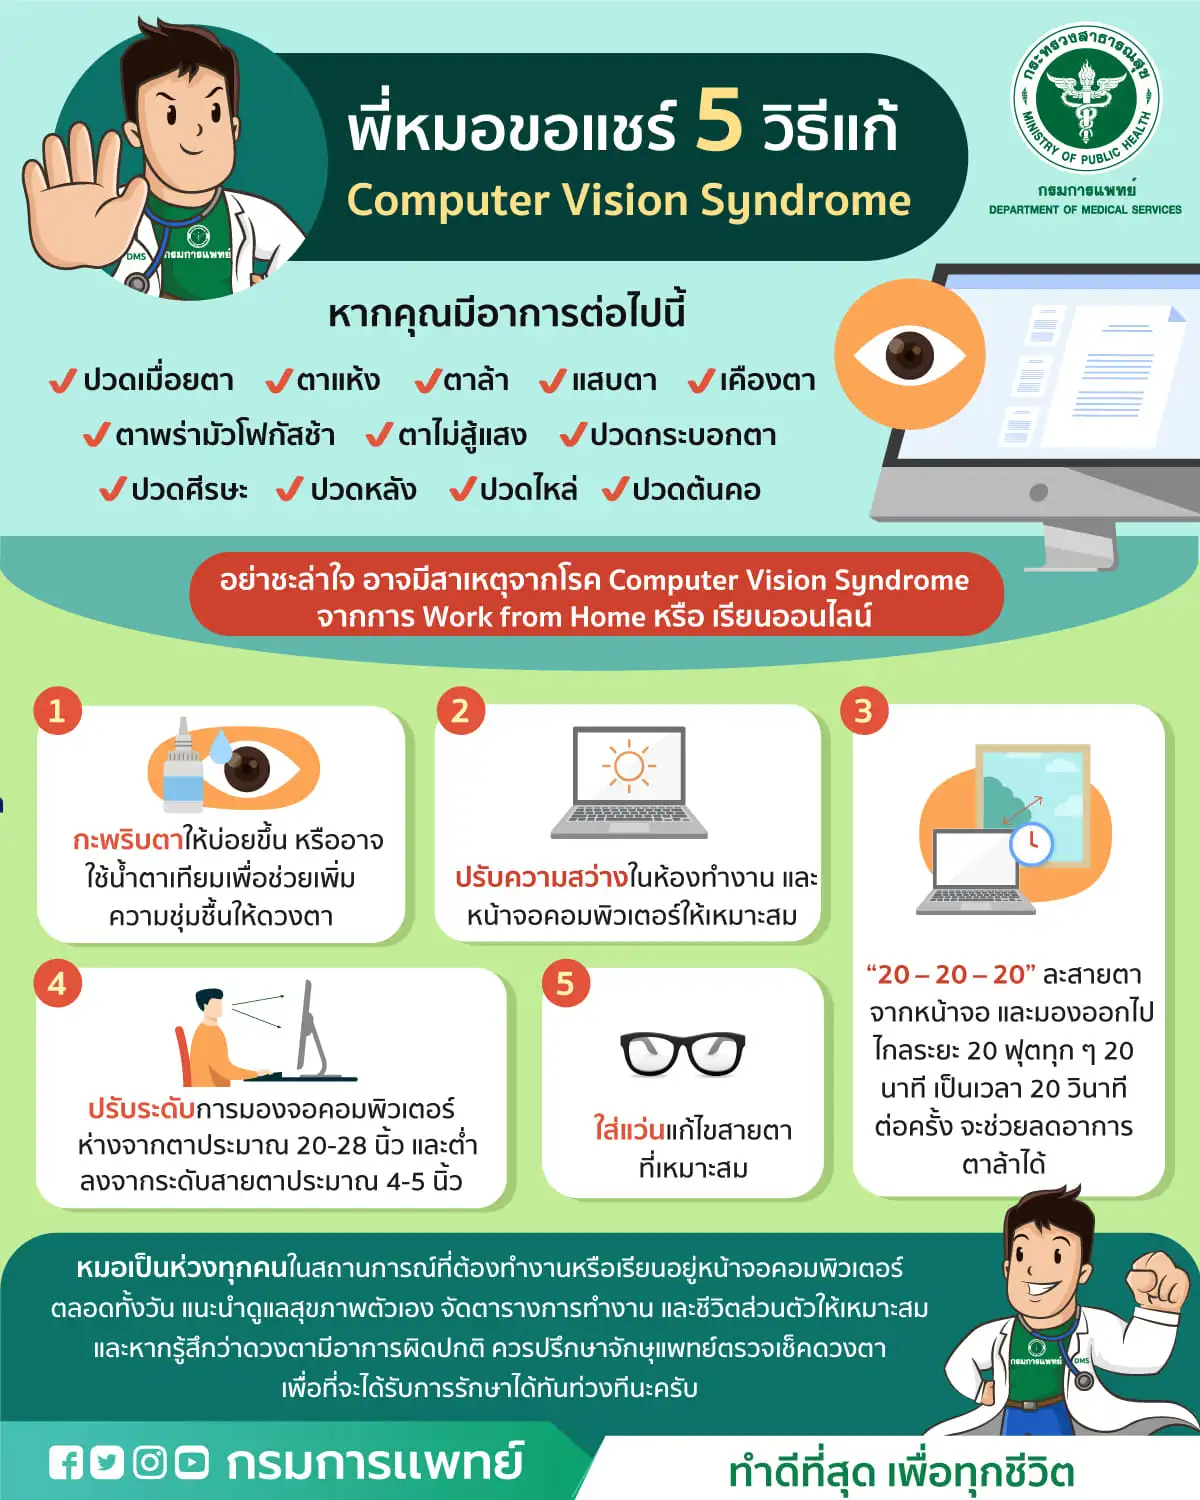 กรมแพทย์แนะ! ป้องกันการเกิดภาวะ computer vision syndrome ในช่วง Work from home HealthServ